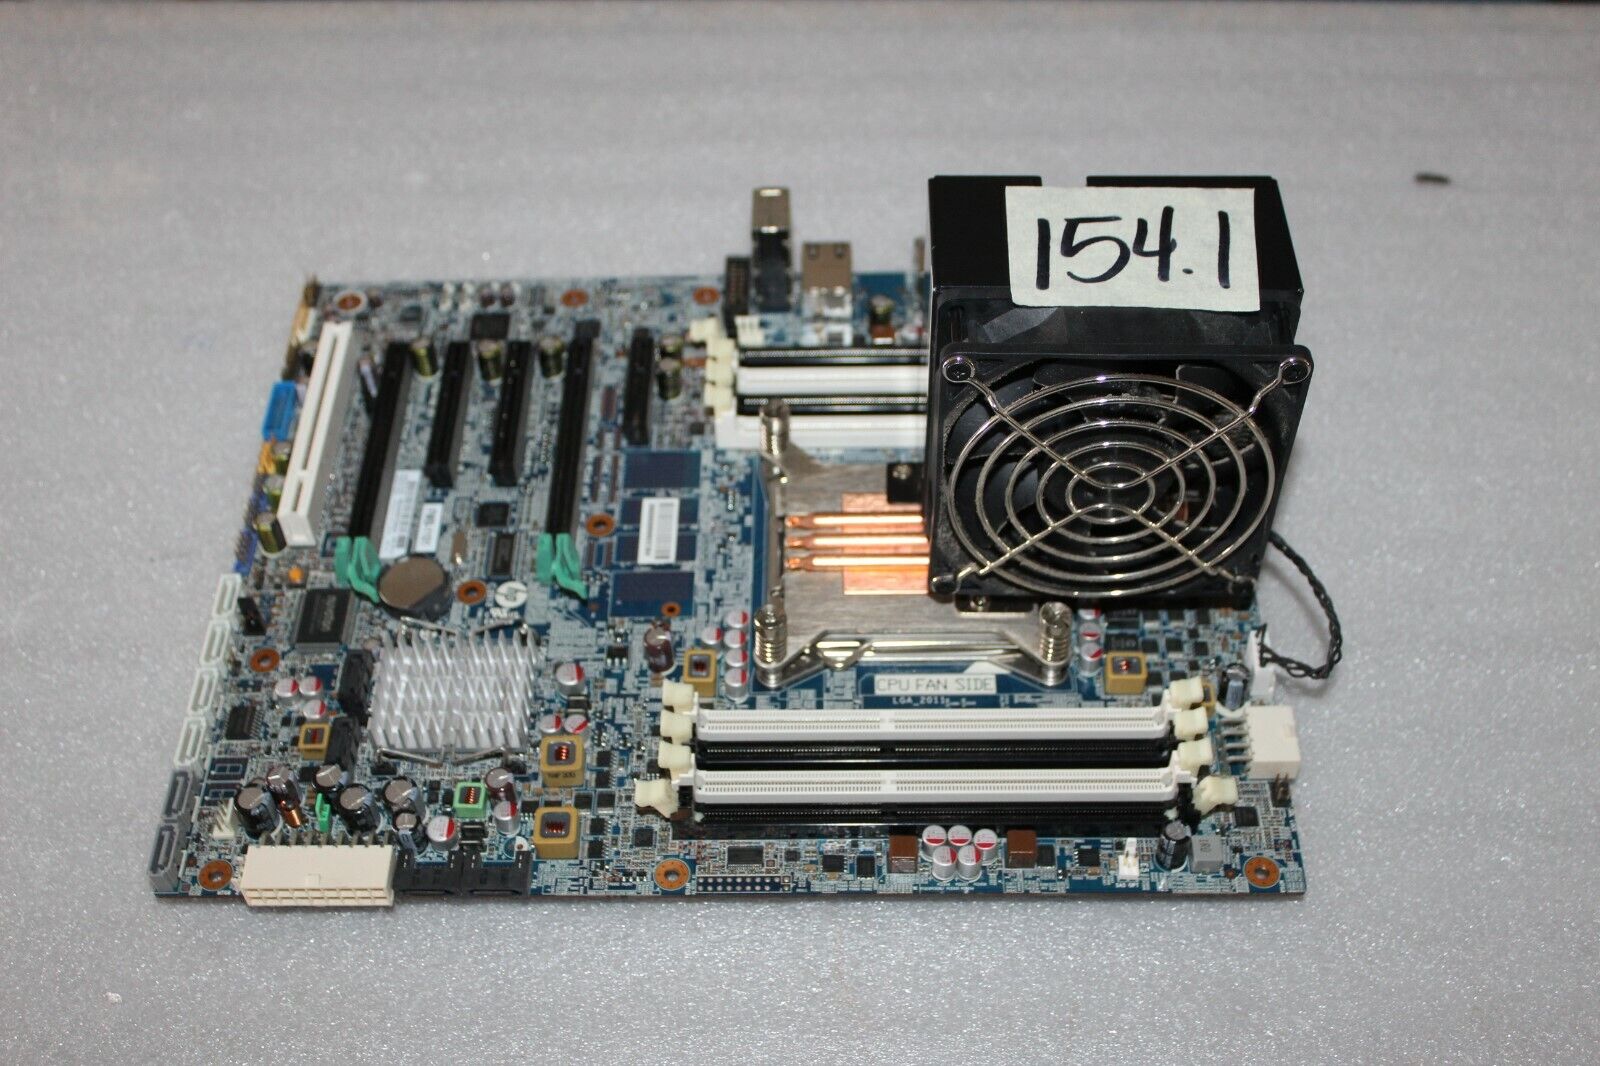 HP FMB-1101 618263-001 Server Board w/ Intel Xeon 3.00GHz from HP Z420